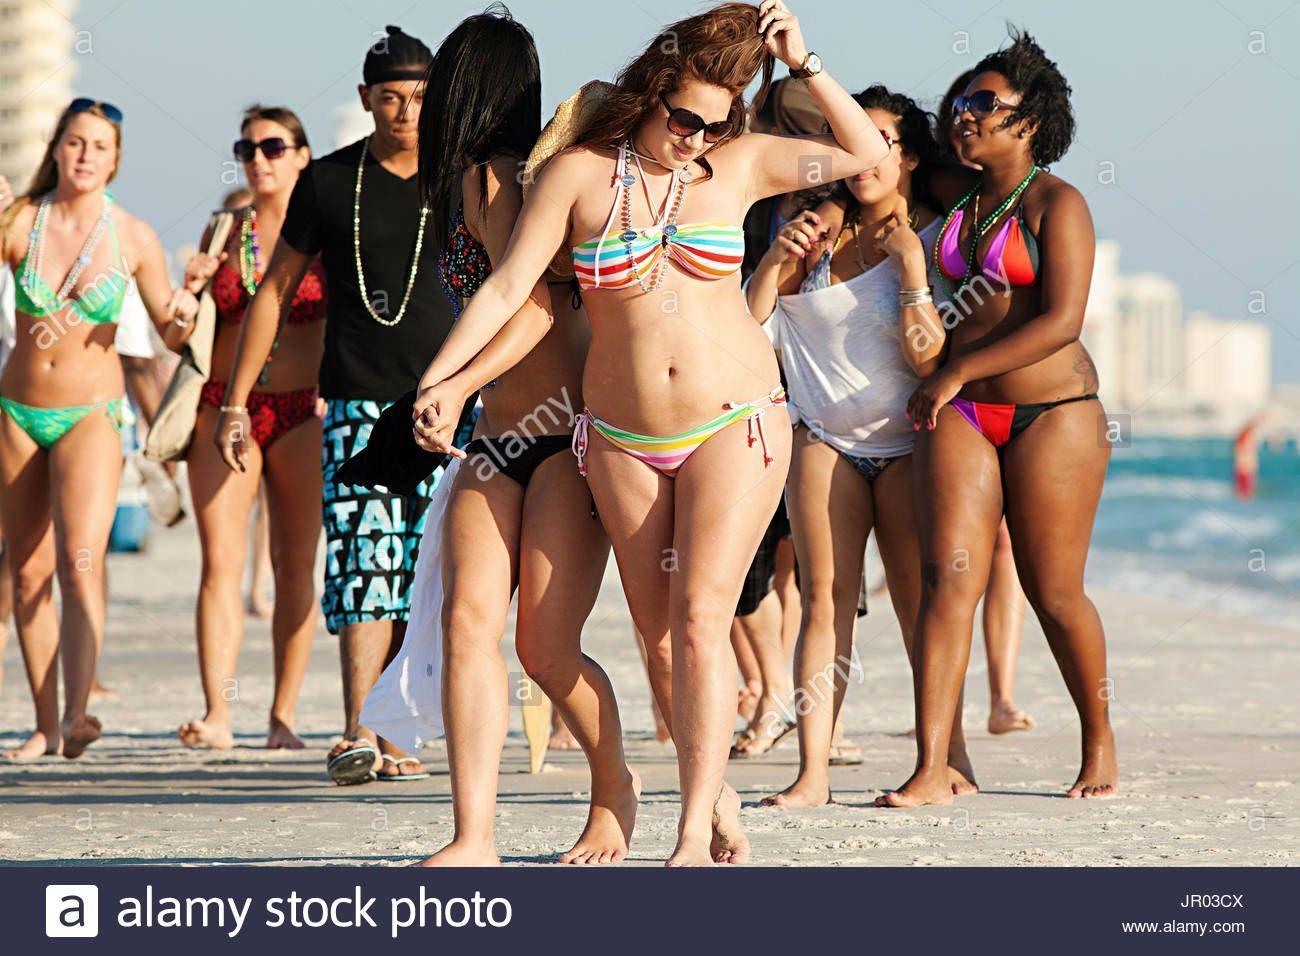 Panama city beach bikini photos